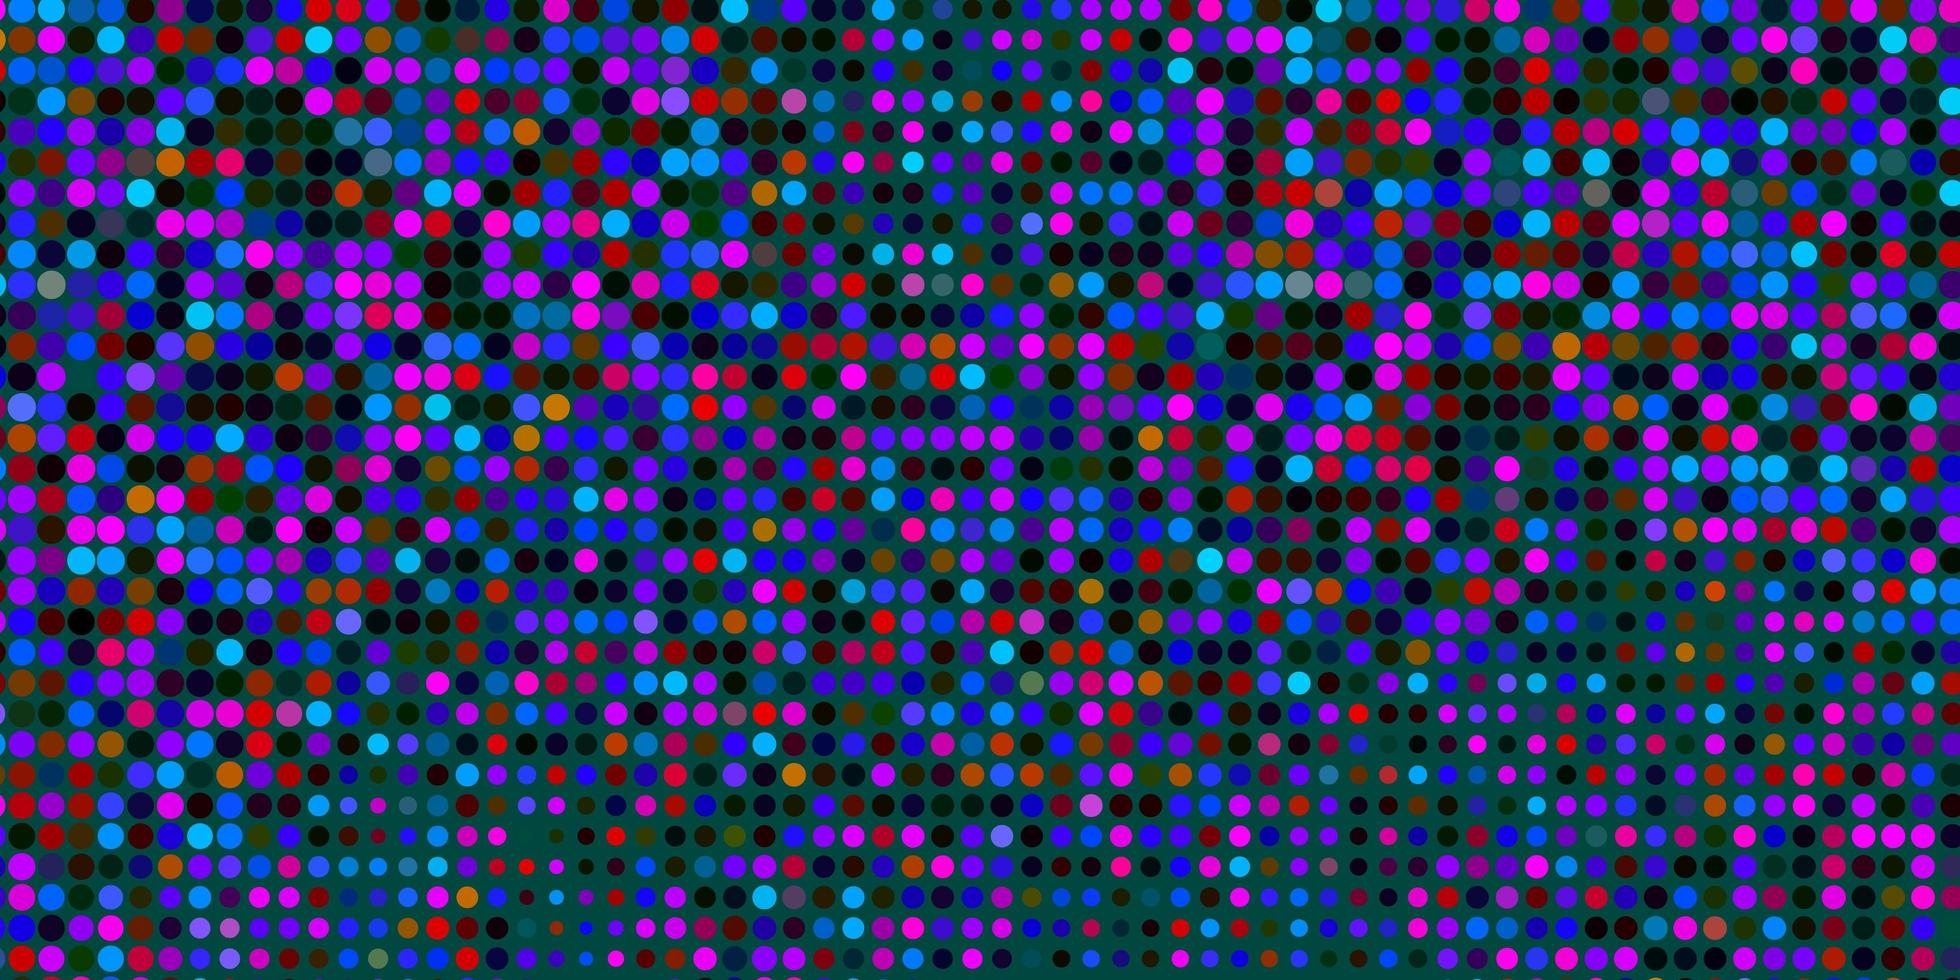 mörk flerfärgad vektor bakgrund med prickar.